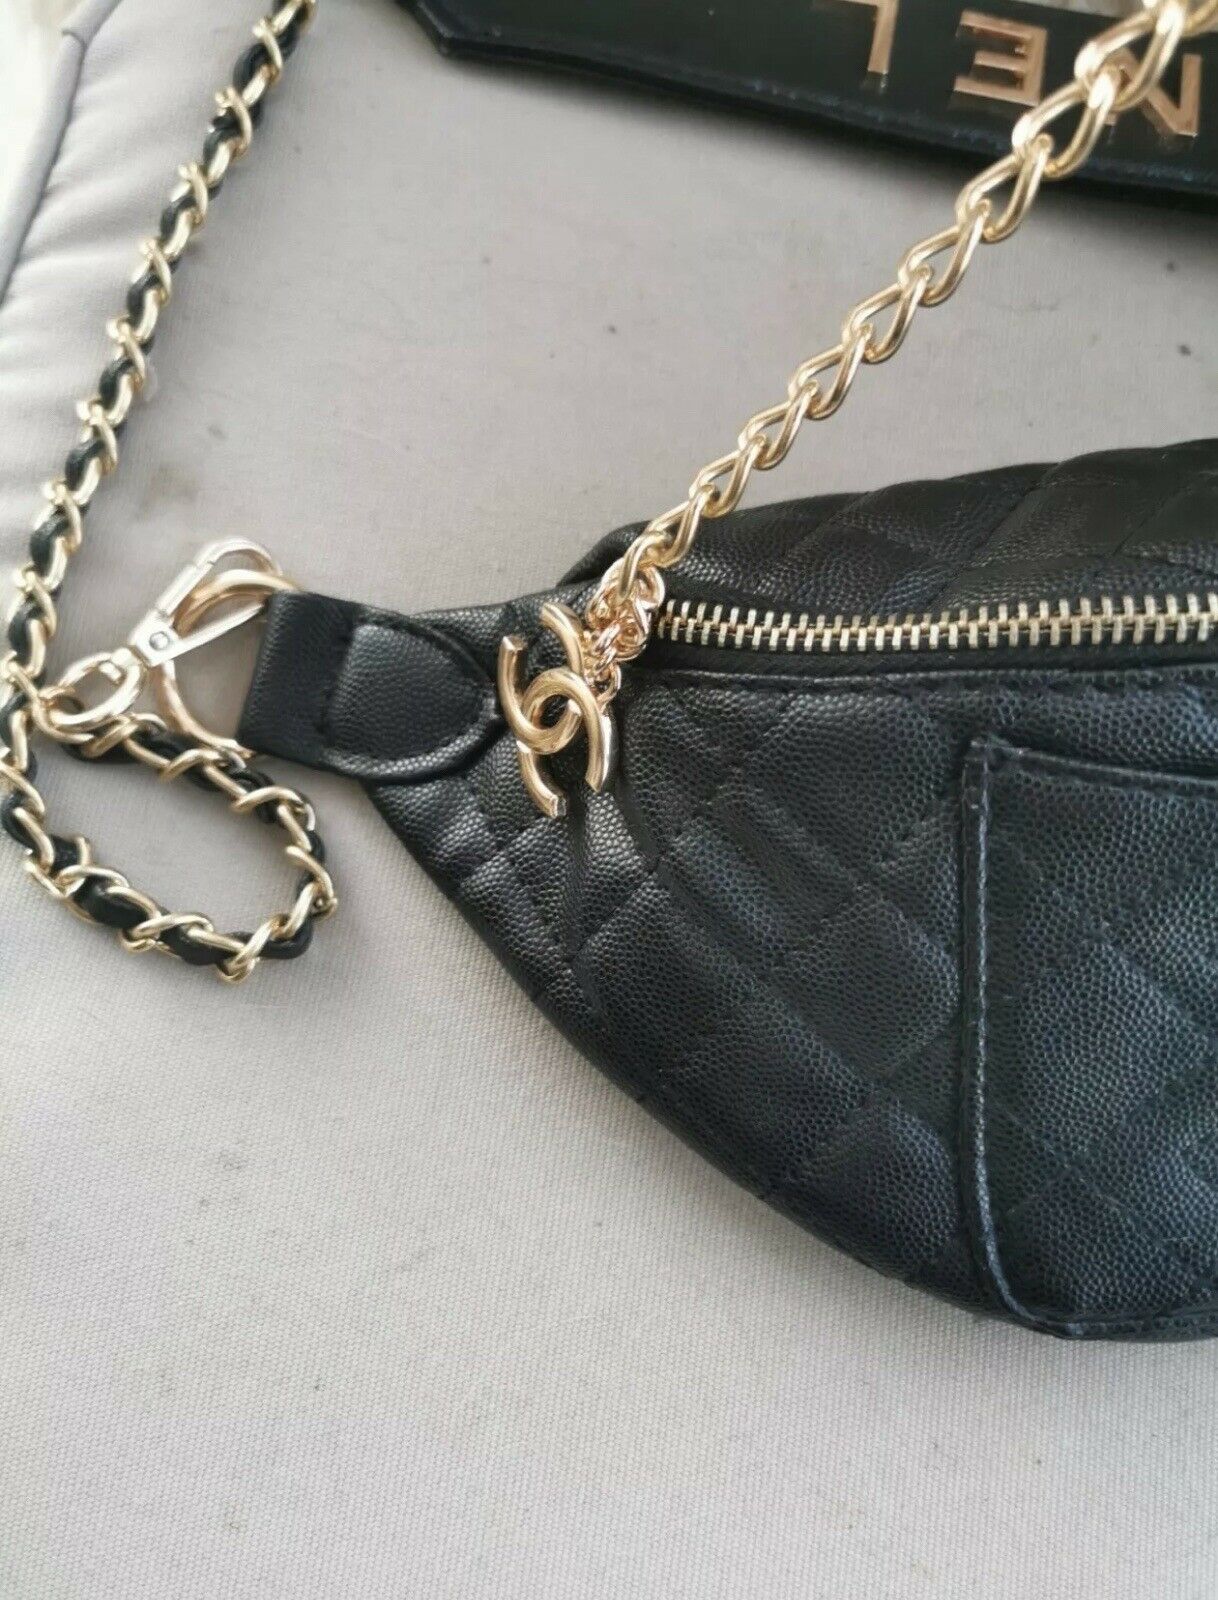 Shop Chanel Vip Gift Bag online